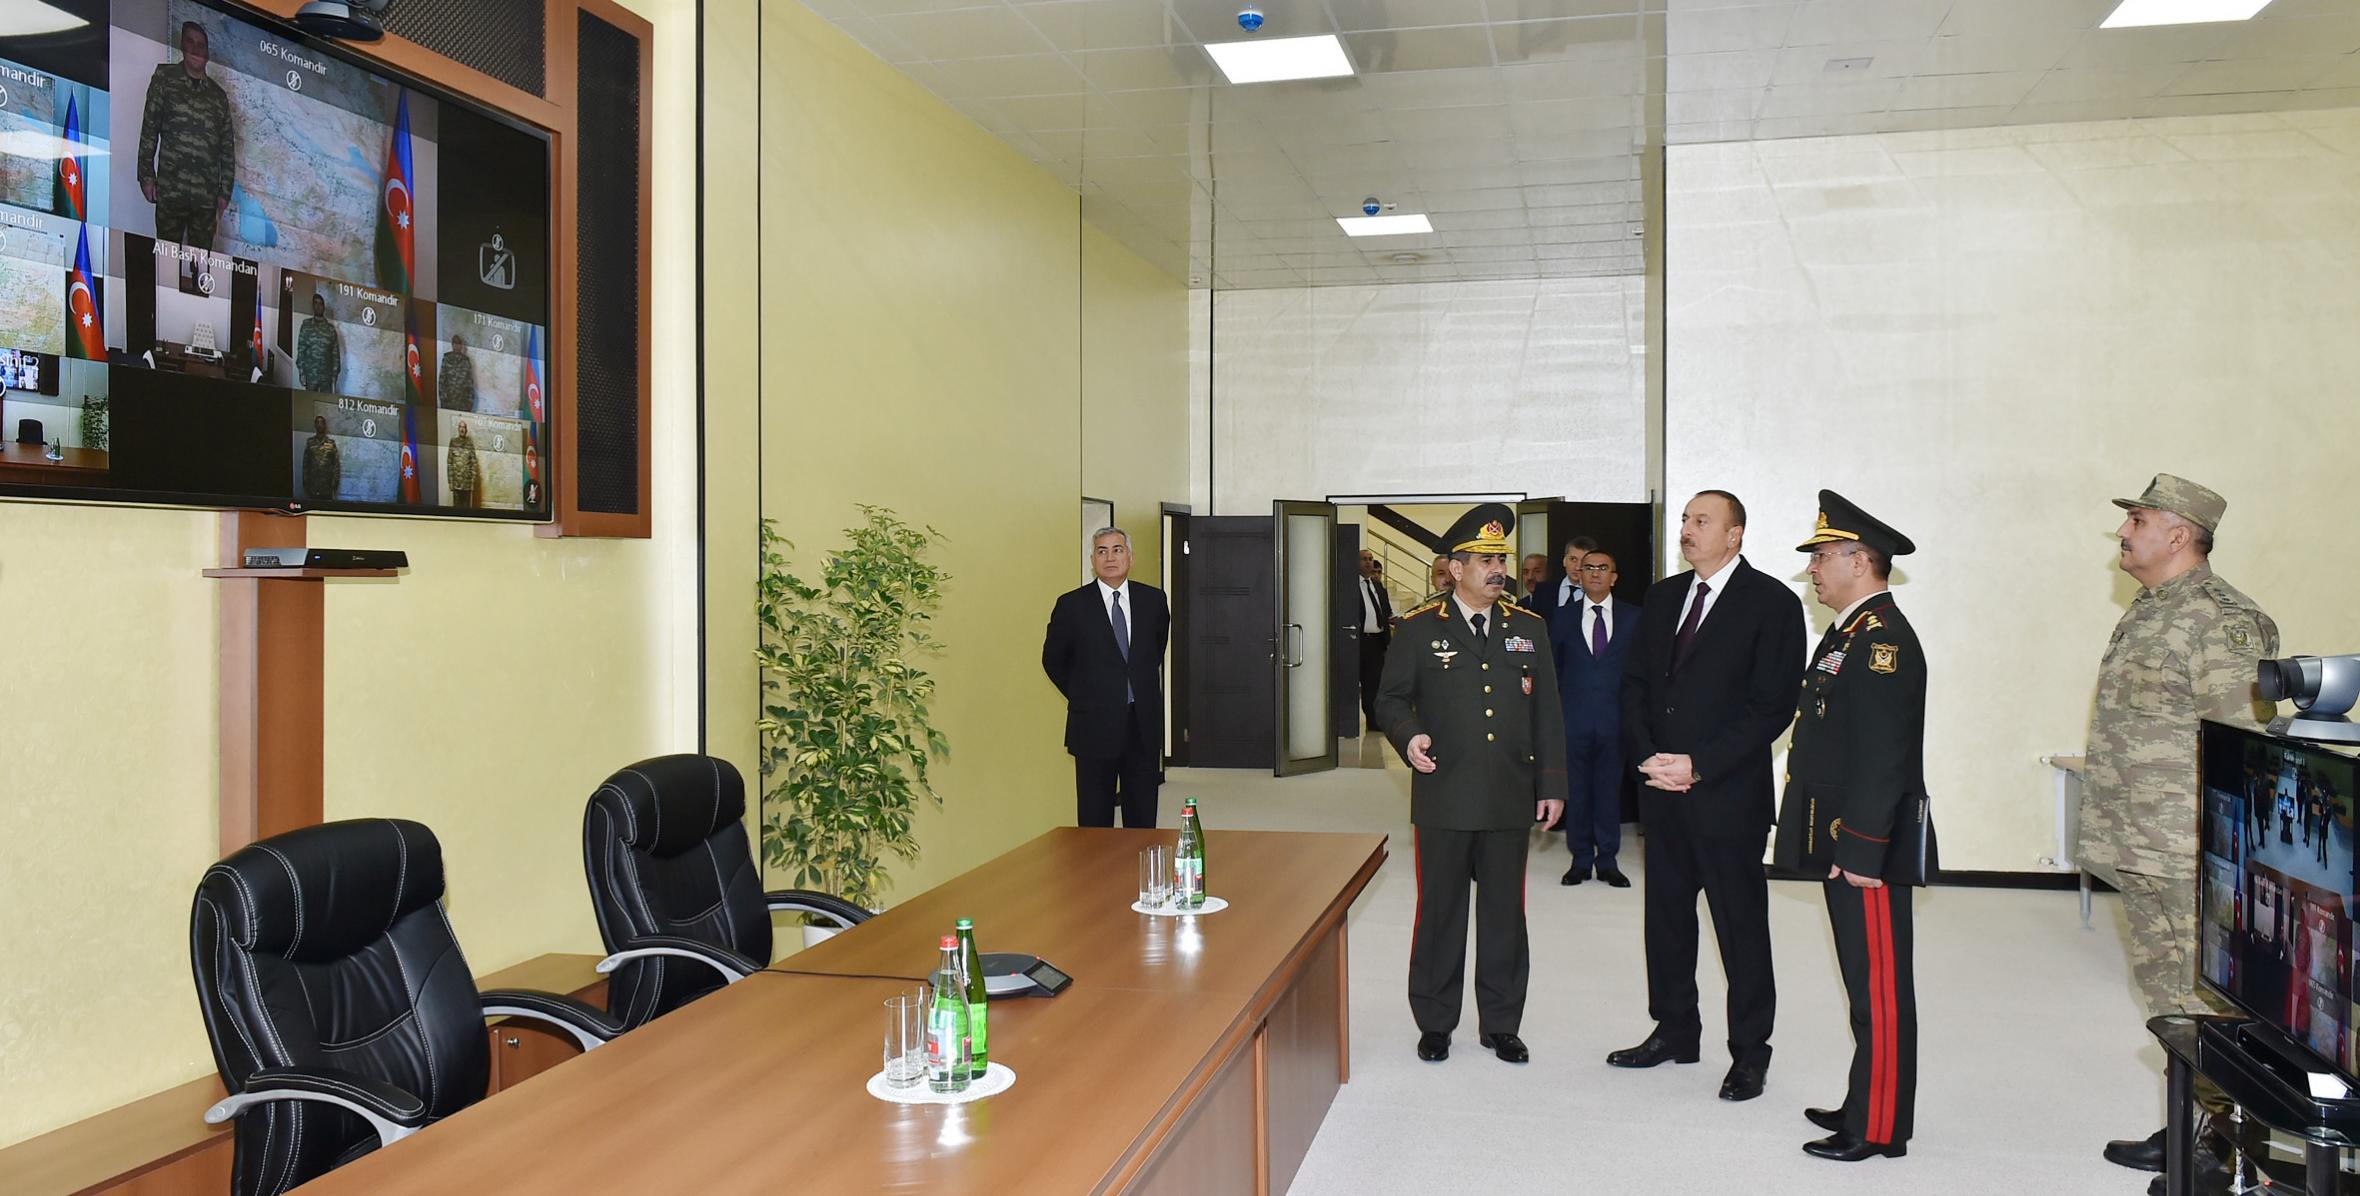 Ильхам Алиев принял участие в открытии здания штаба, построенного на территории военного городка Шамкирского военного соединения